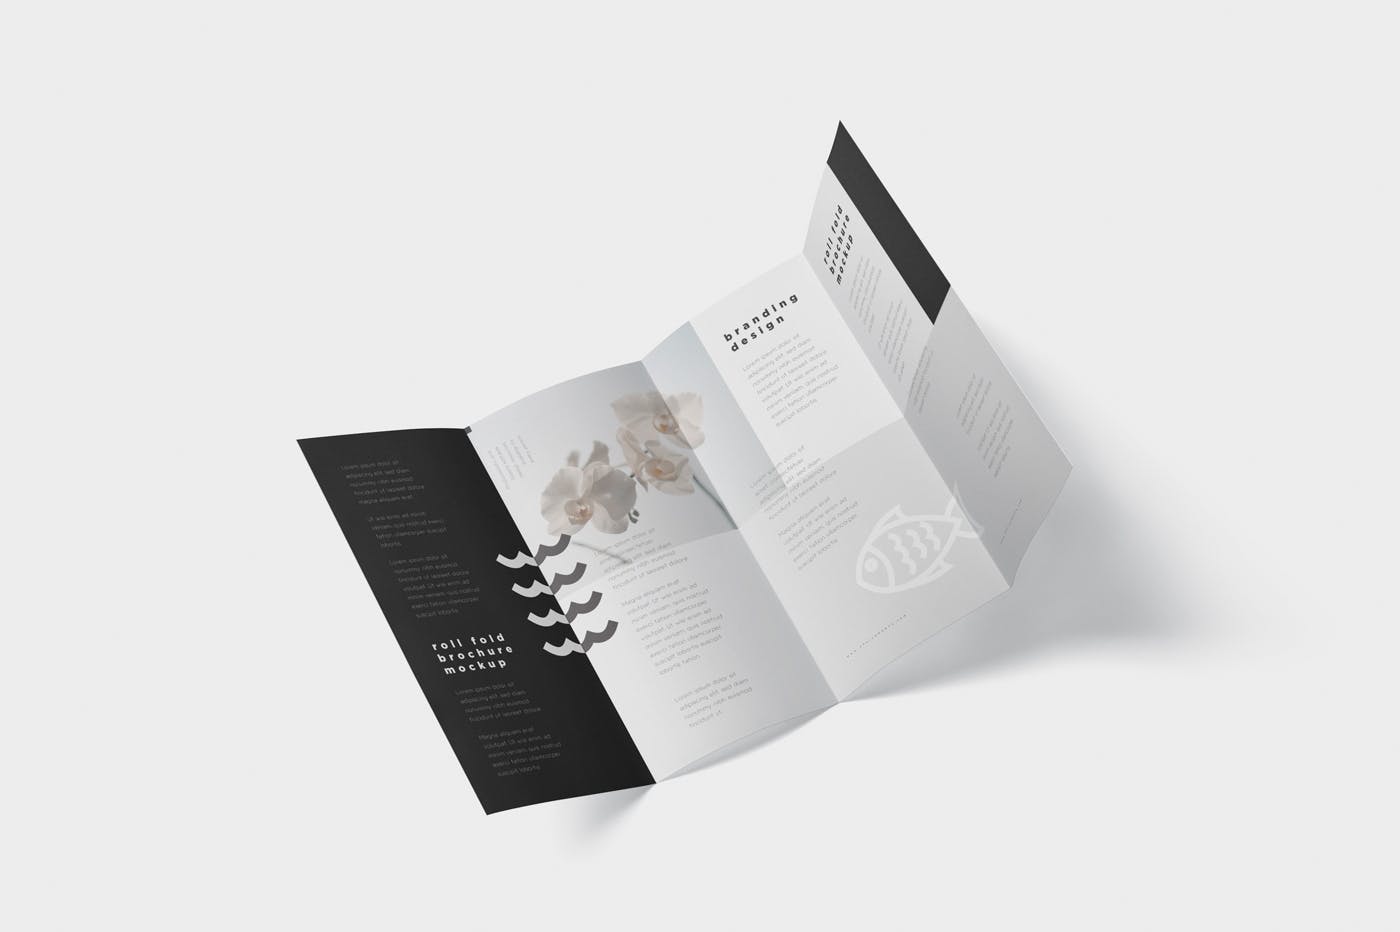 折叠设计风格企业传单/宣传册设计样机大洋岛精选 Roll-Fold Brochure Mockup – DL DIN Lang Size插图5